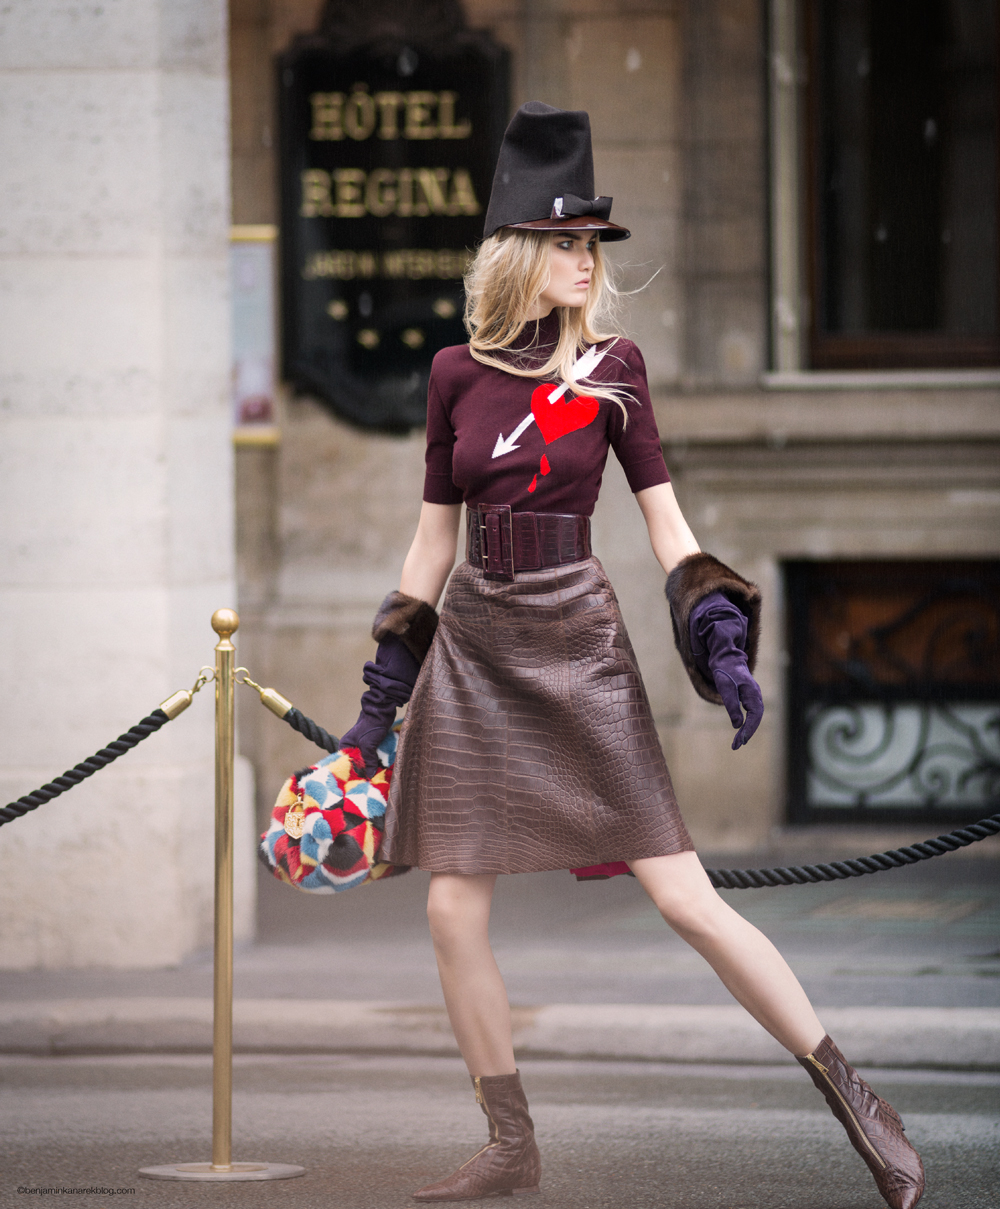 Anna Martynova in Schiaparelli Haute Couture © Benjamin Kanarek